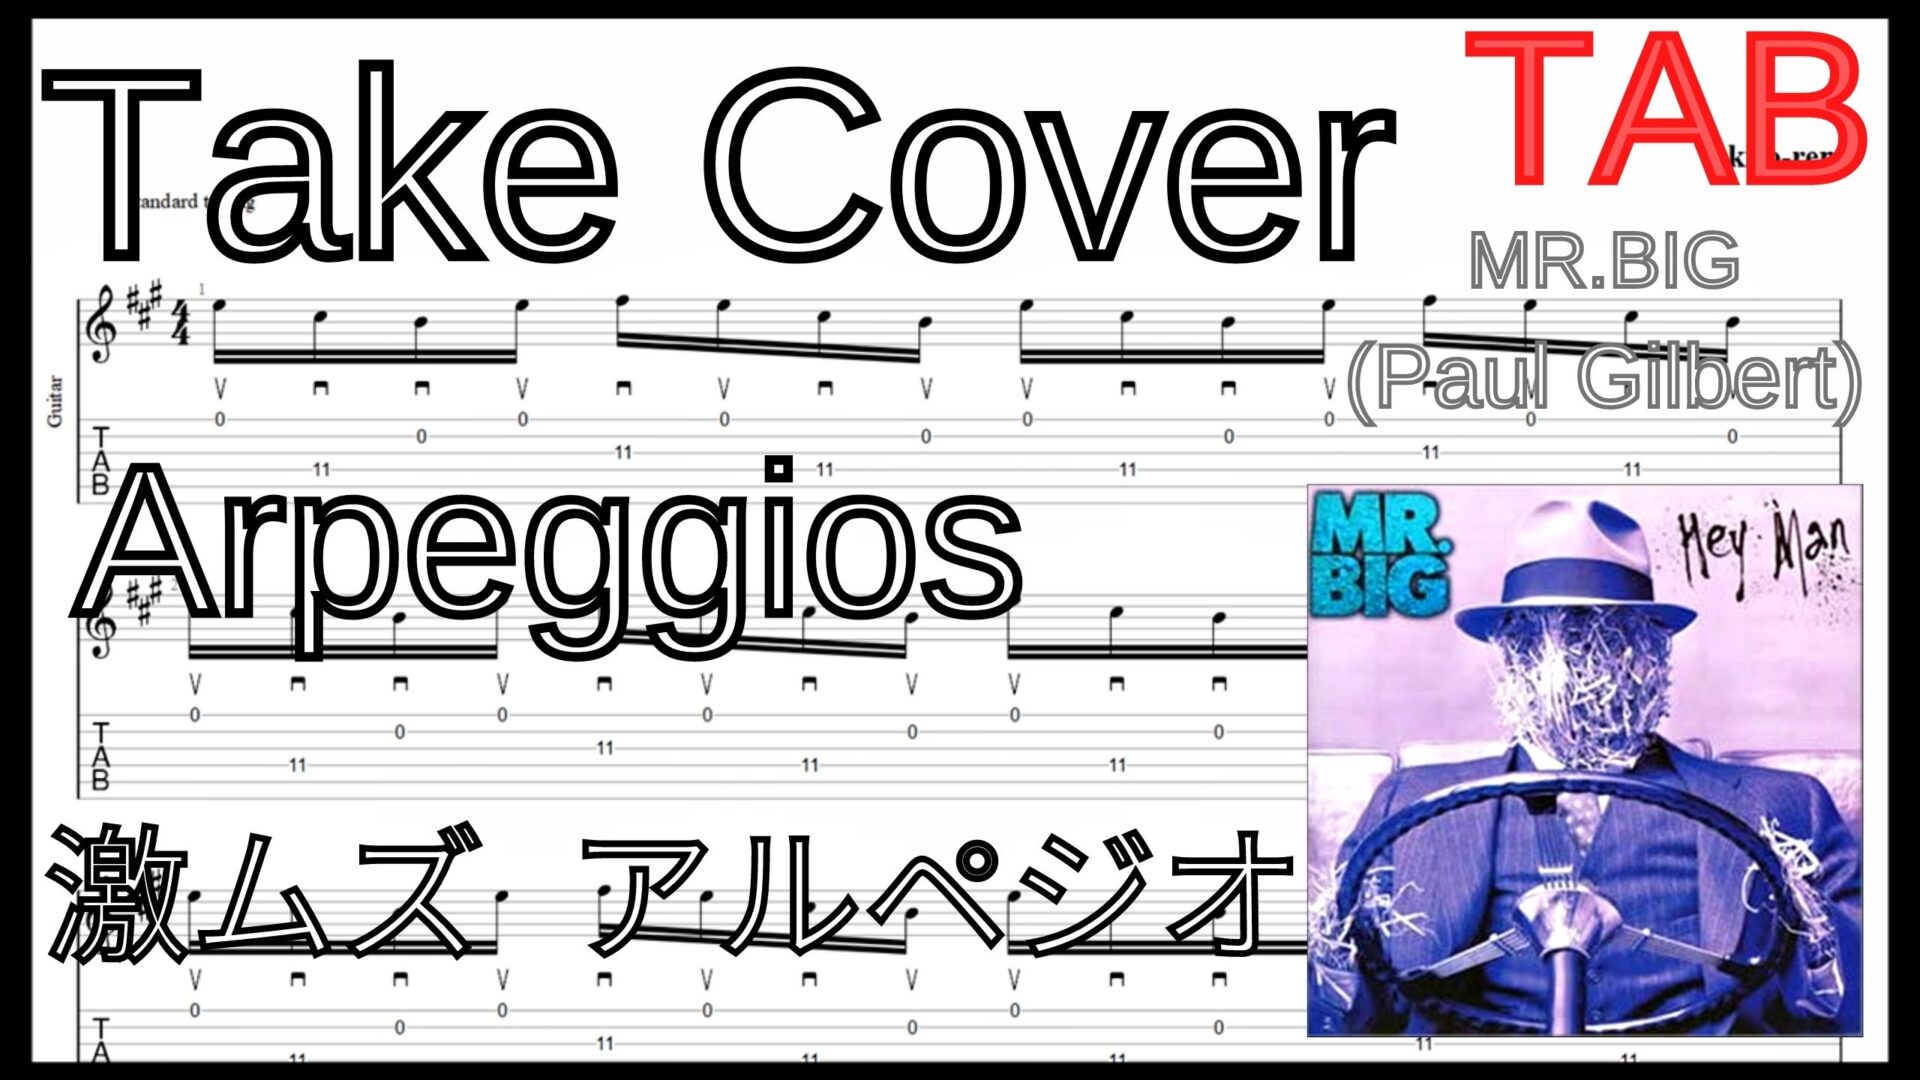 【ギターのピッキング上達練習】TAKE COVER - Mr. Big(Paul Gilbert)Guitar Arpeggios Lesson ポール･ギルバート 激ムズアルペジオ練習【Practice TAB】ギターのピッキングが上手くなりたい人にオススメのフレーズ特集｡初心者さんにもオススメ！